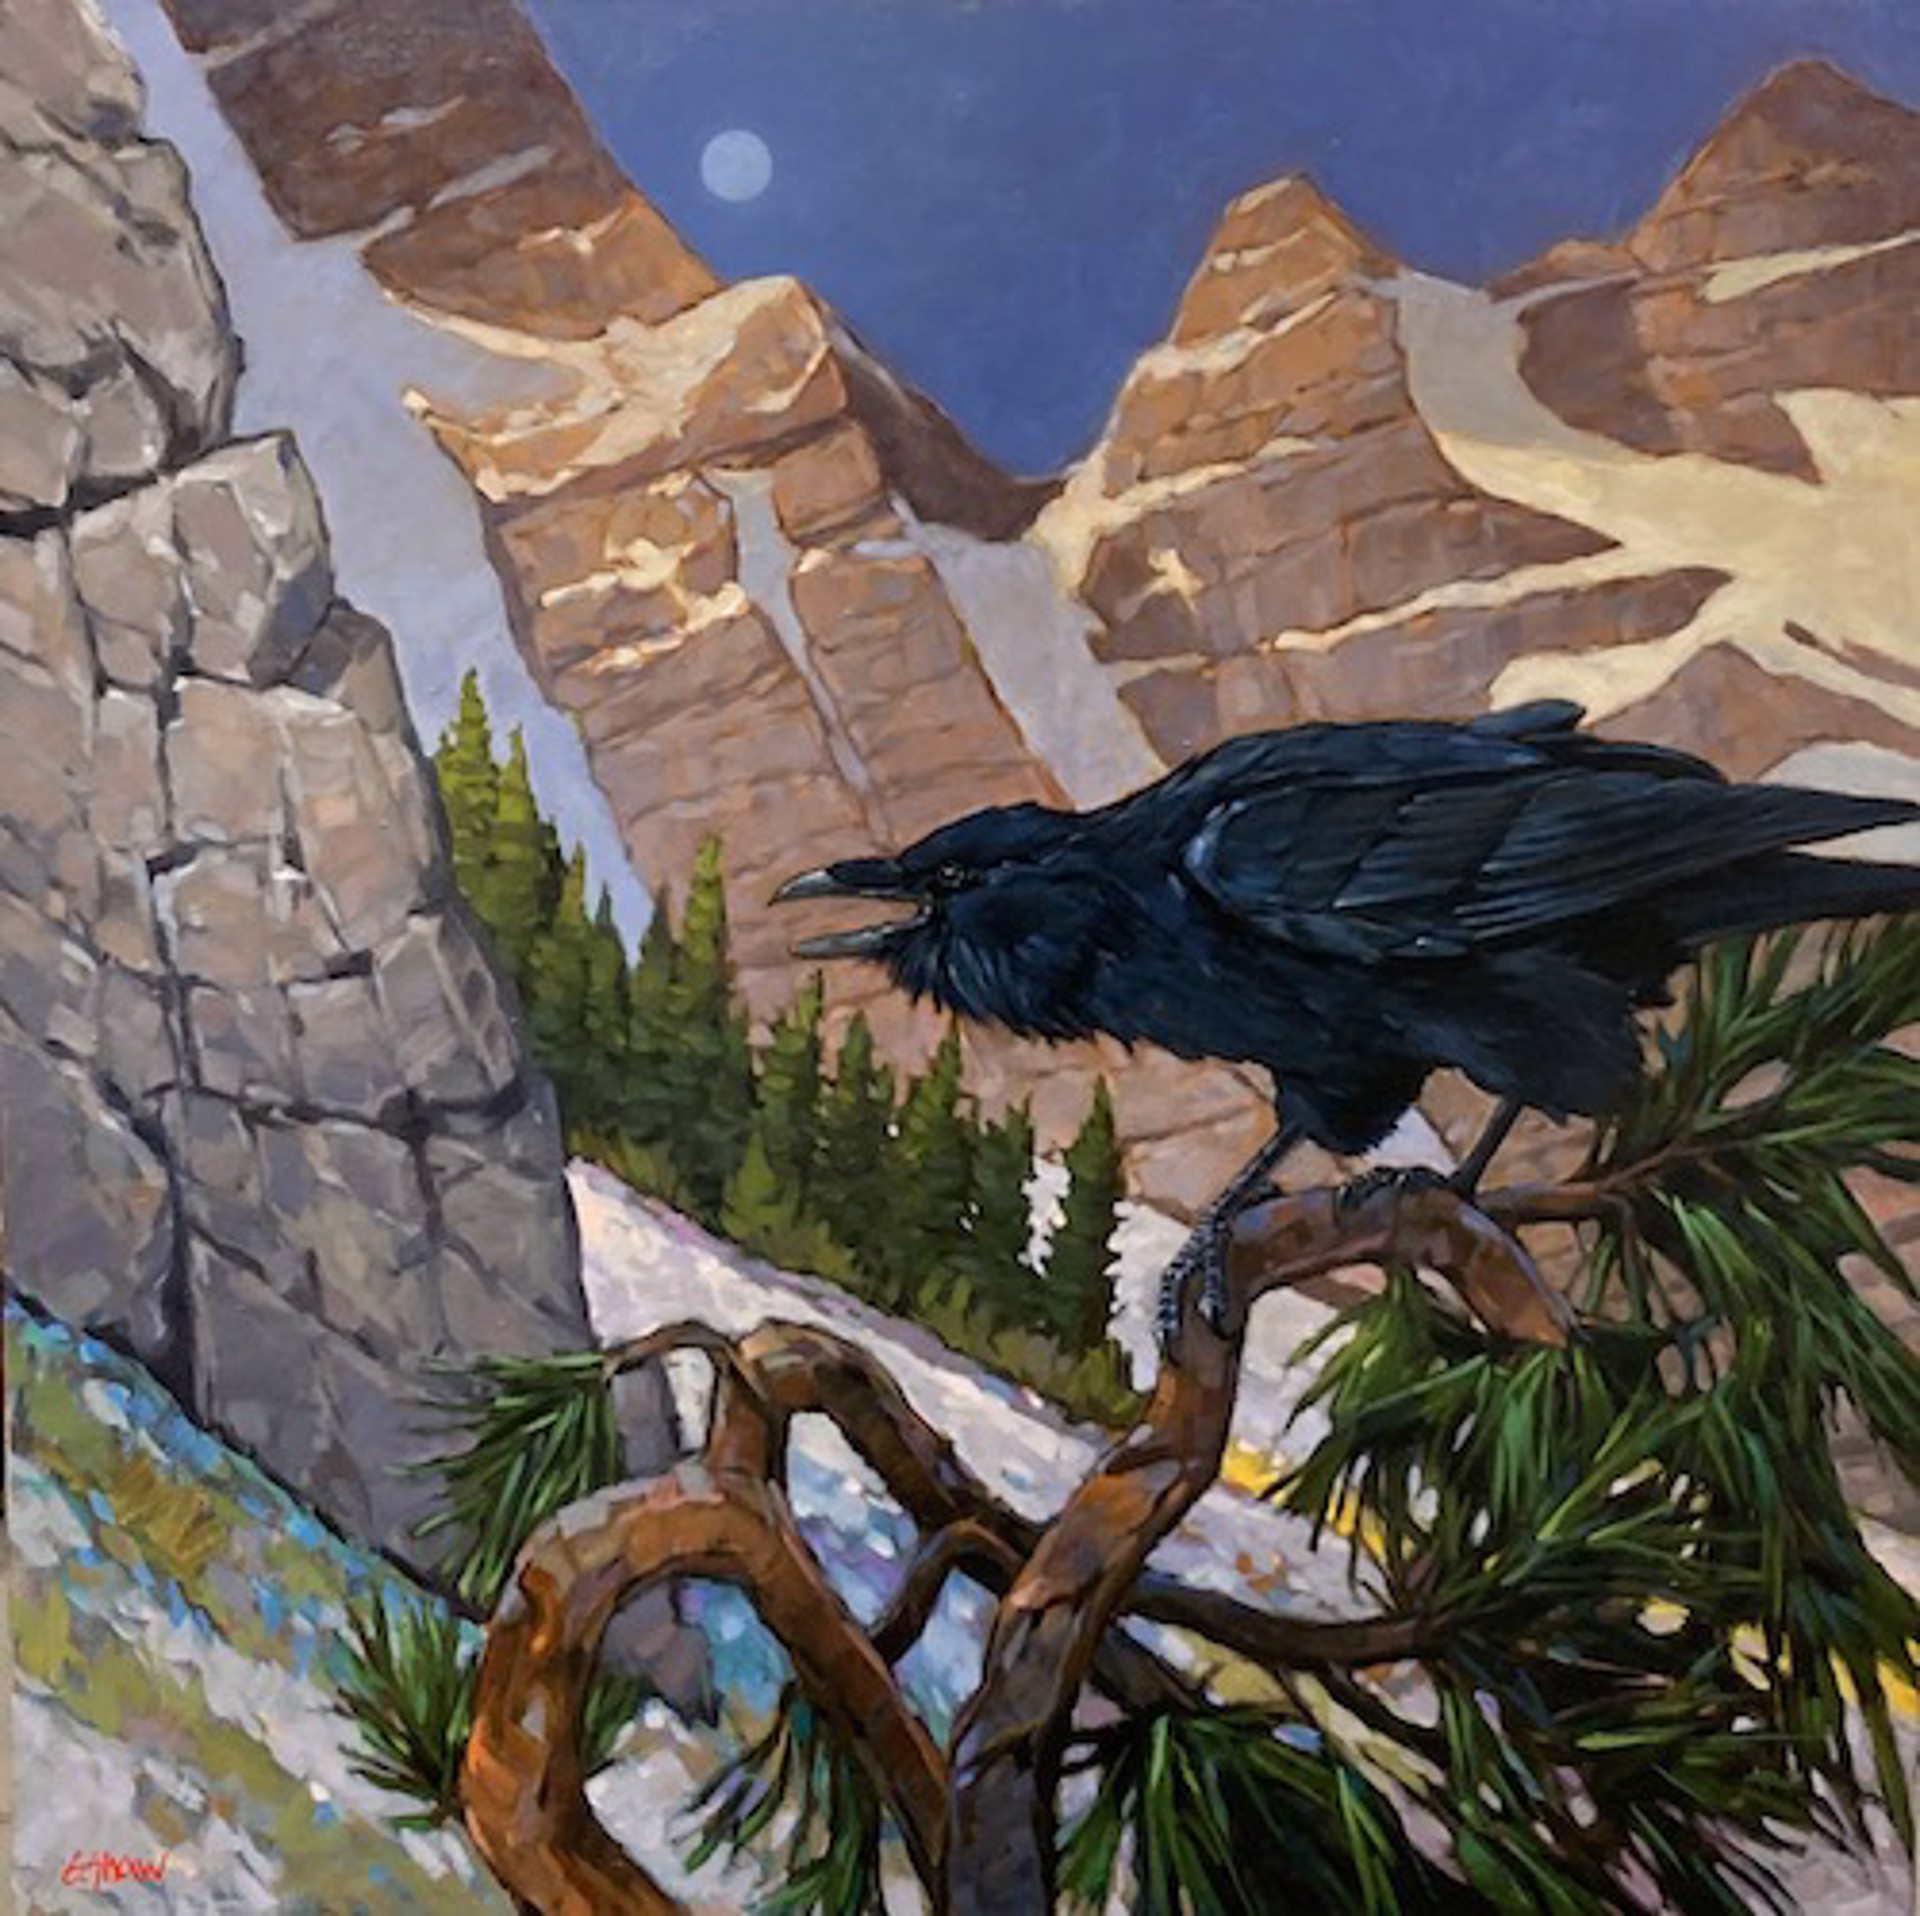 The Raven by Graeme Shaw